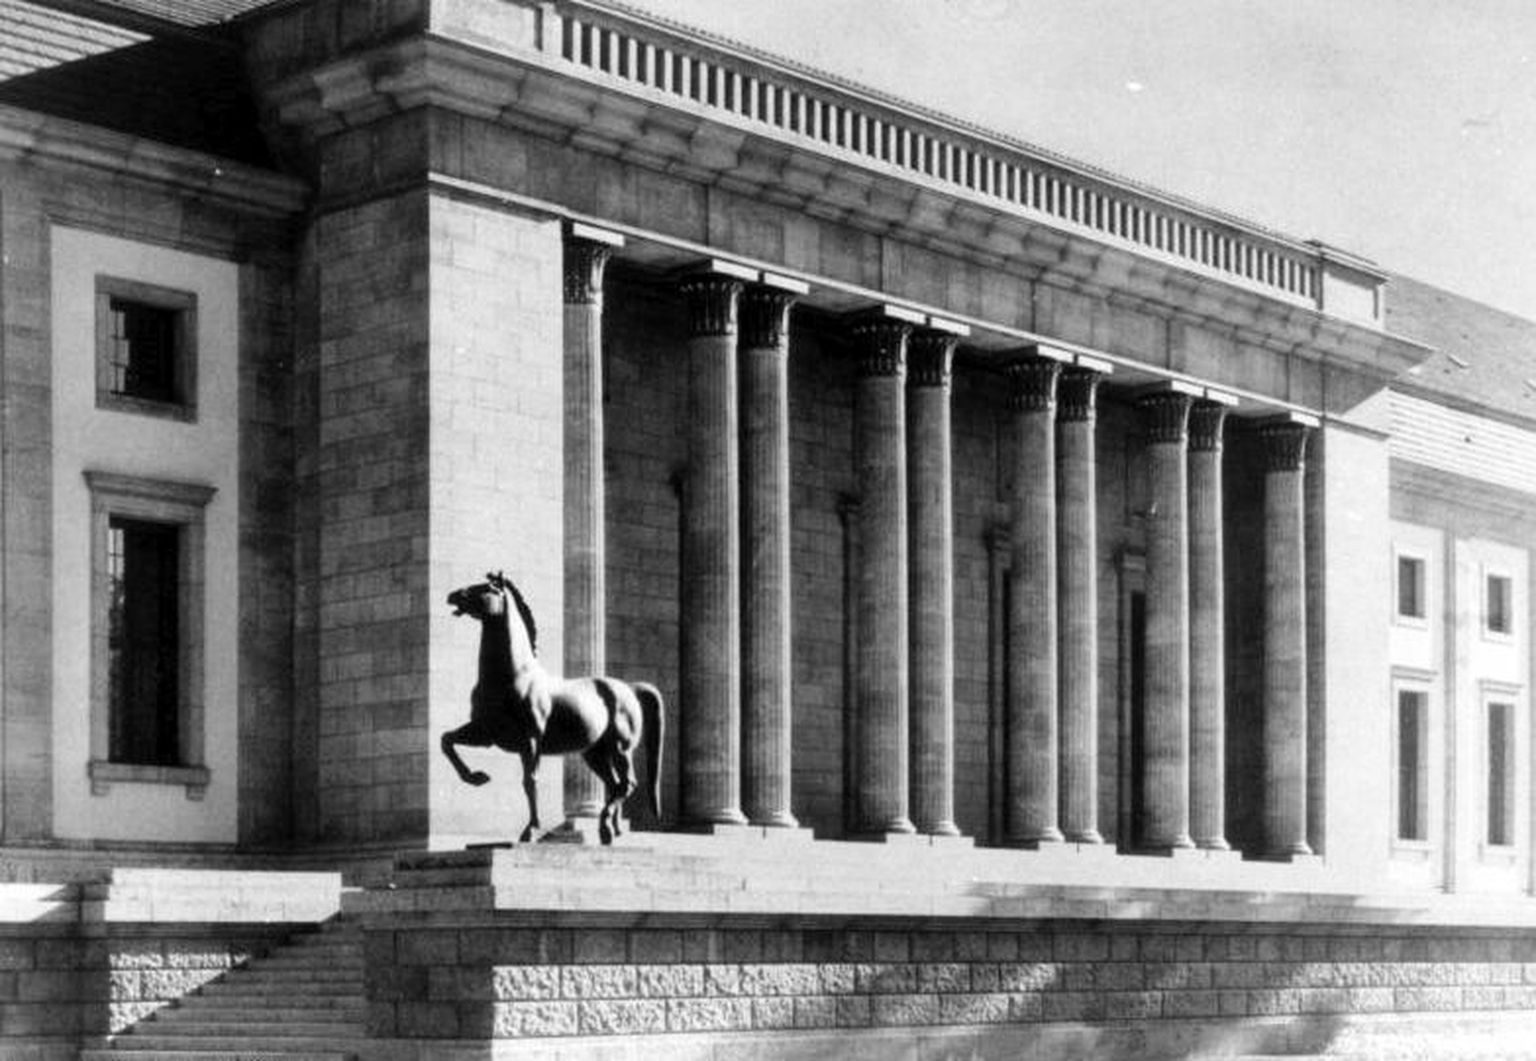 Berliinis Riigikantselei juures asusid kunagi pronksist hobuseskulptuurid